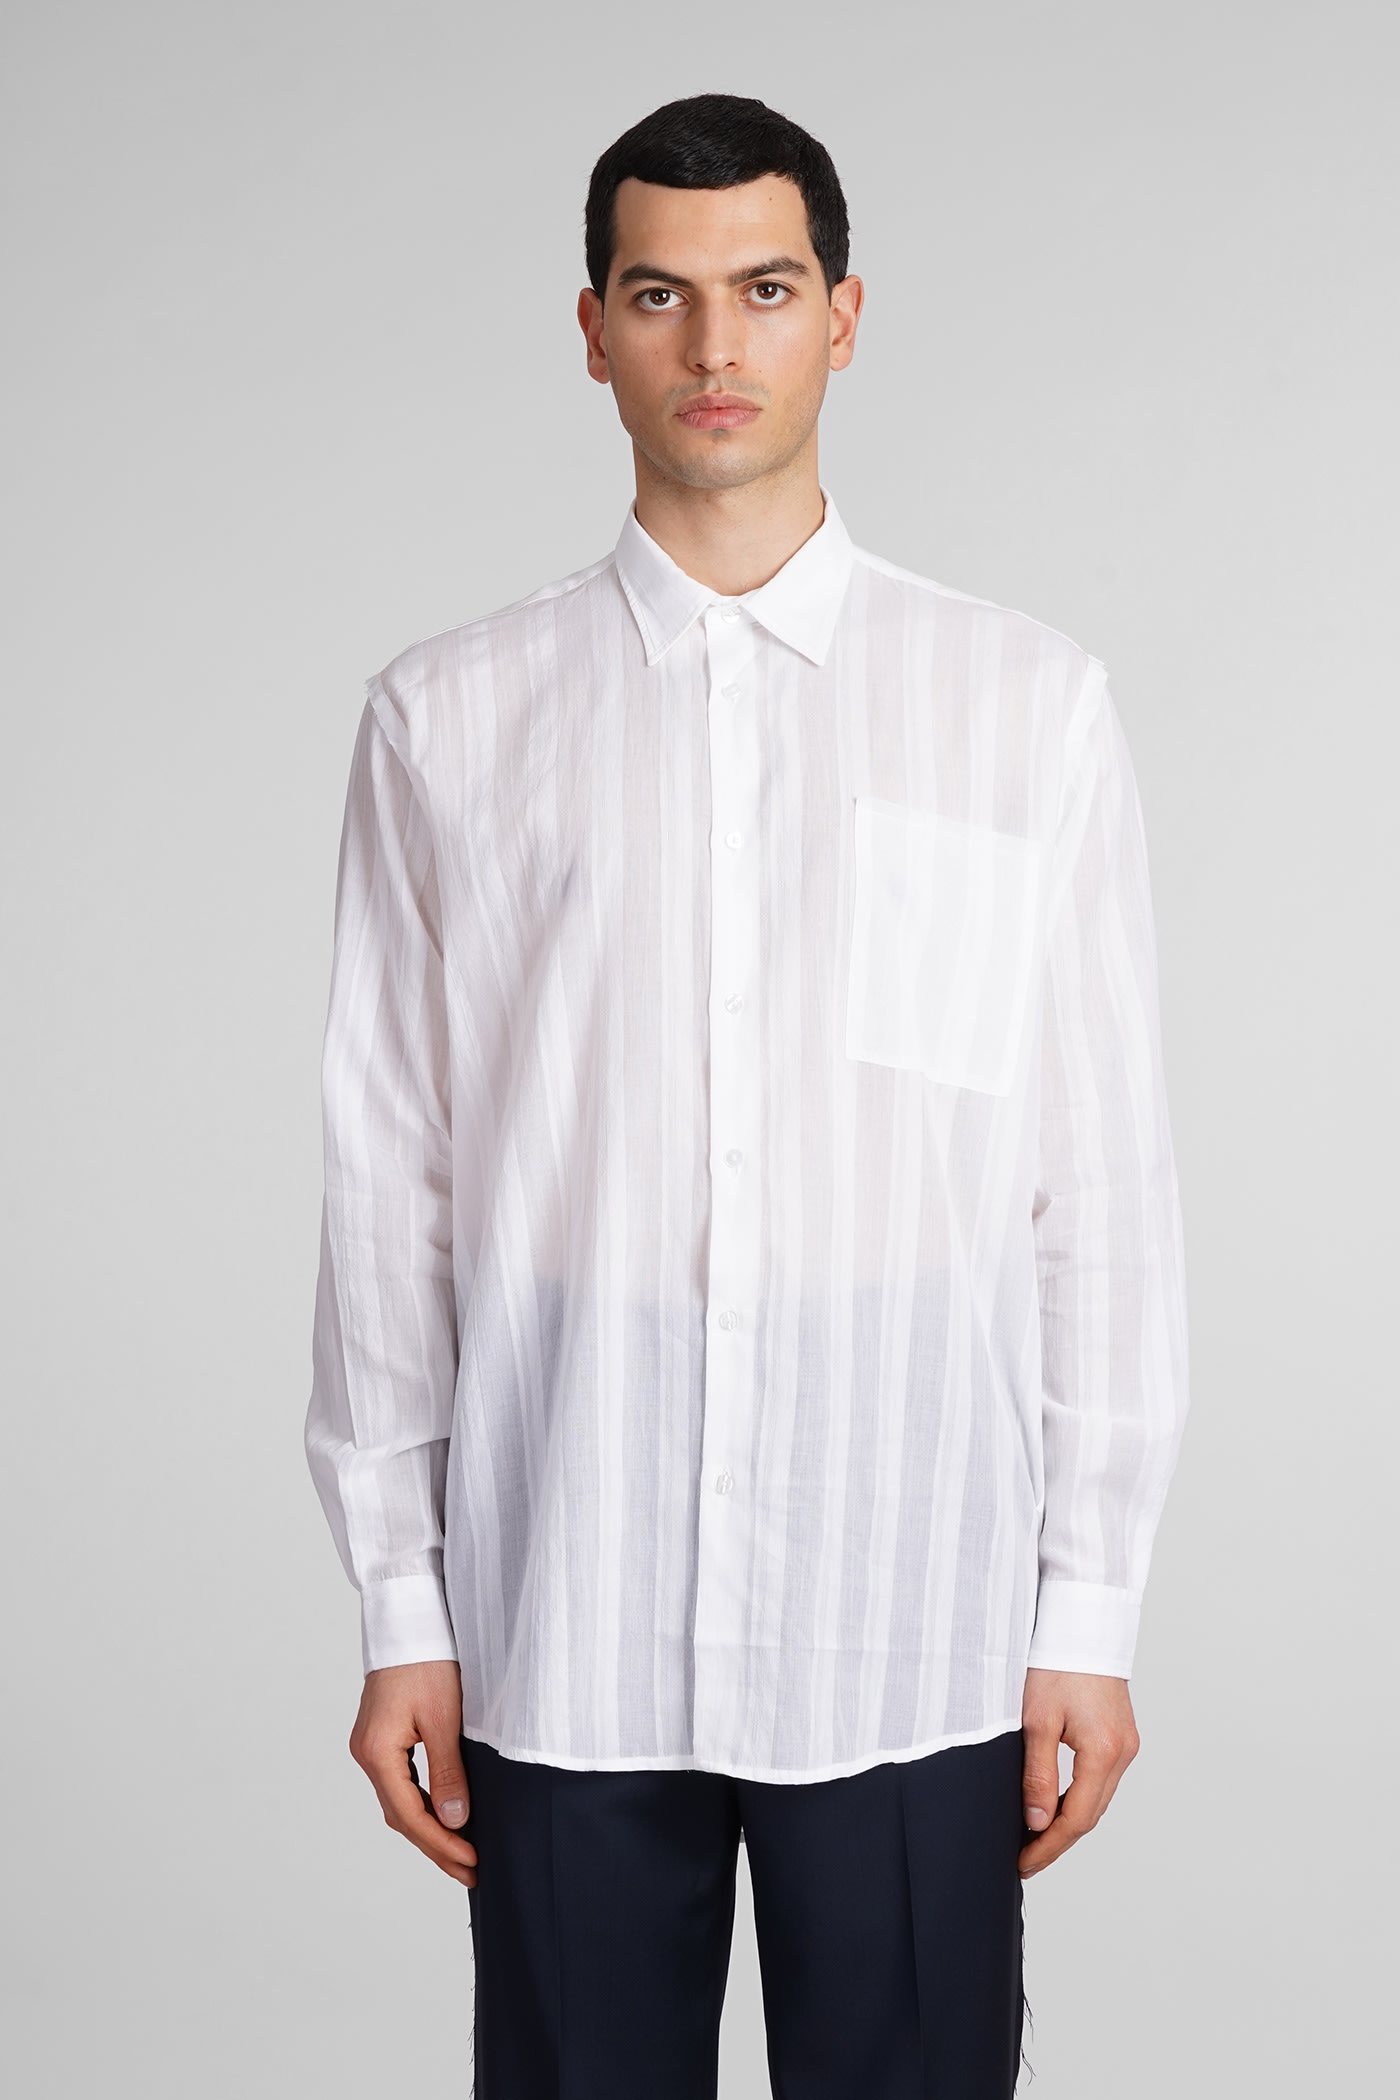 Erzin Shirt In White Cotton